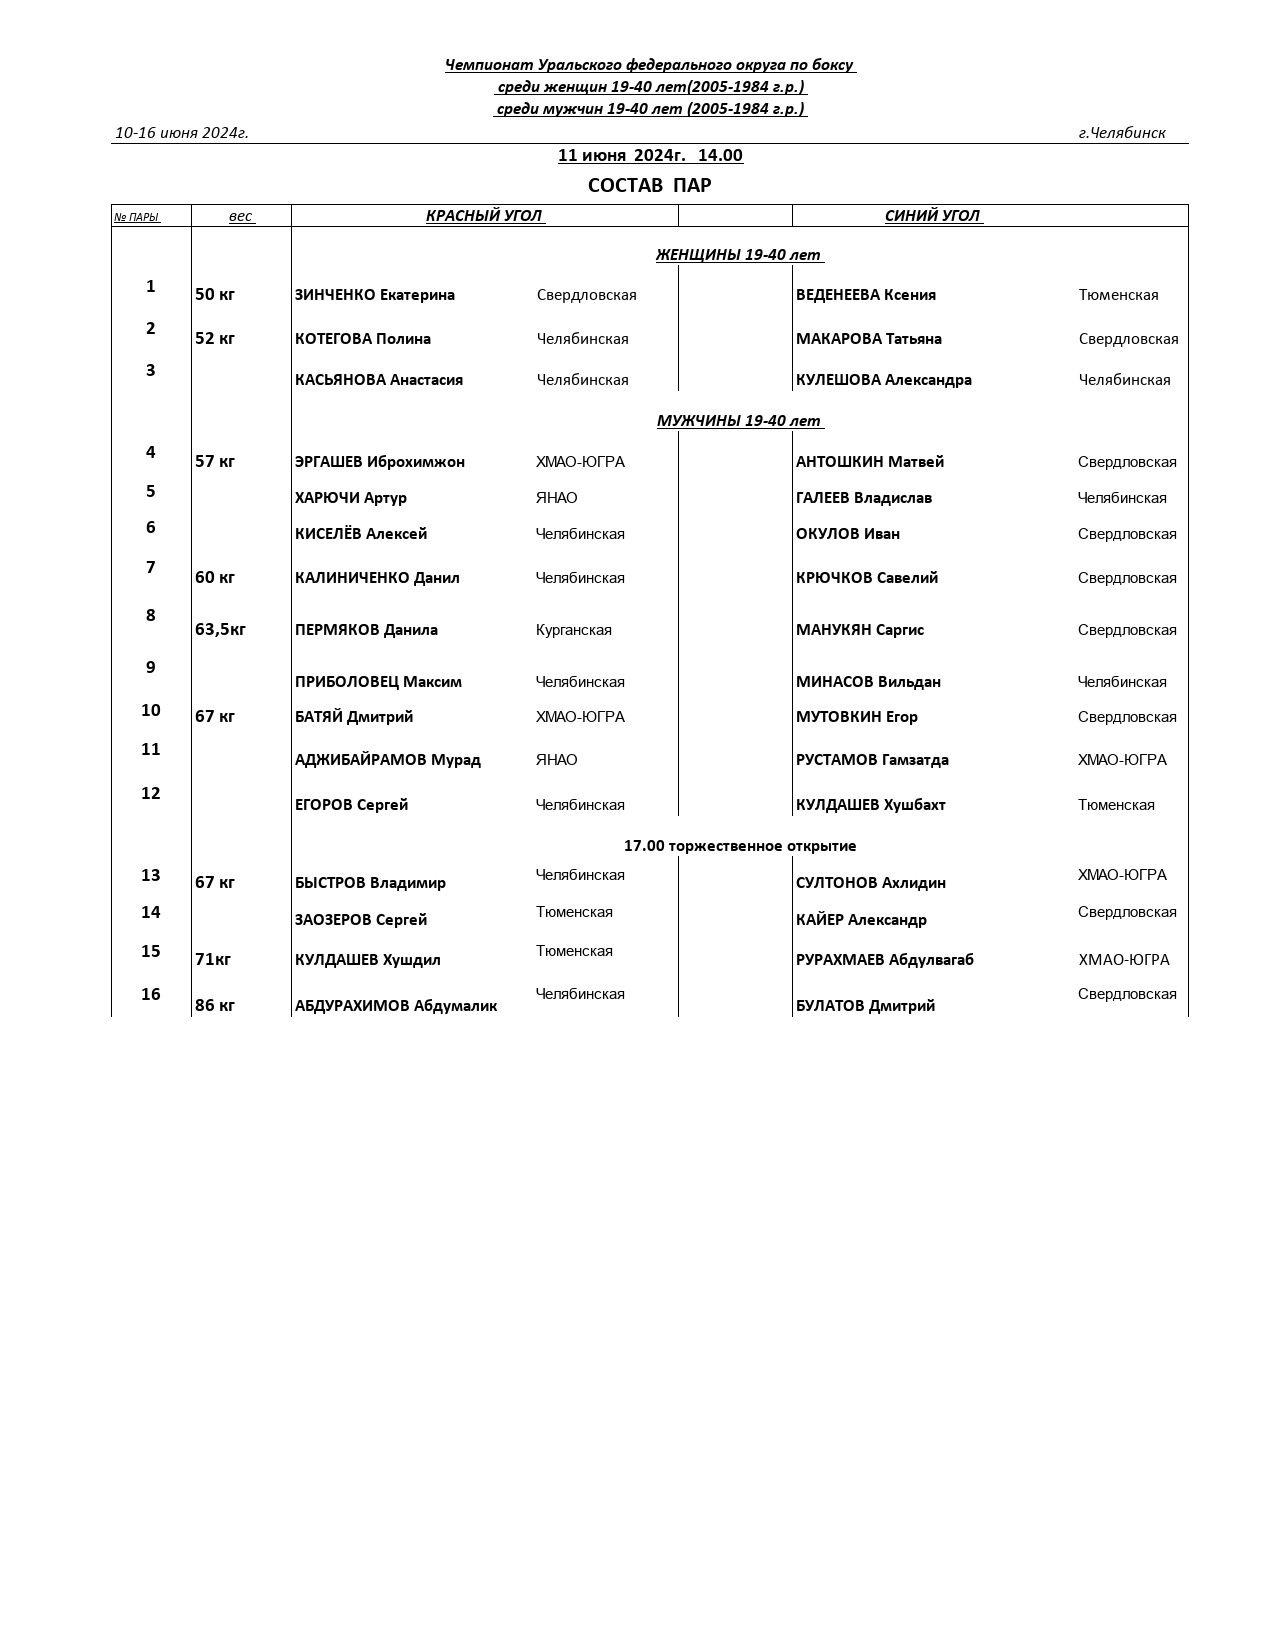 состав пар и регламент  Чемпионата УФО-1_page-0002